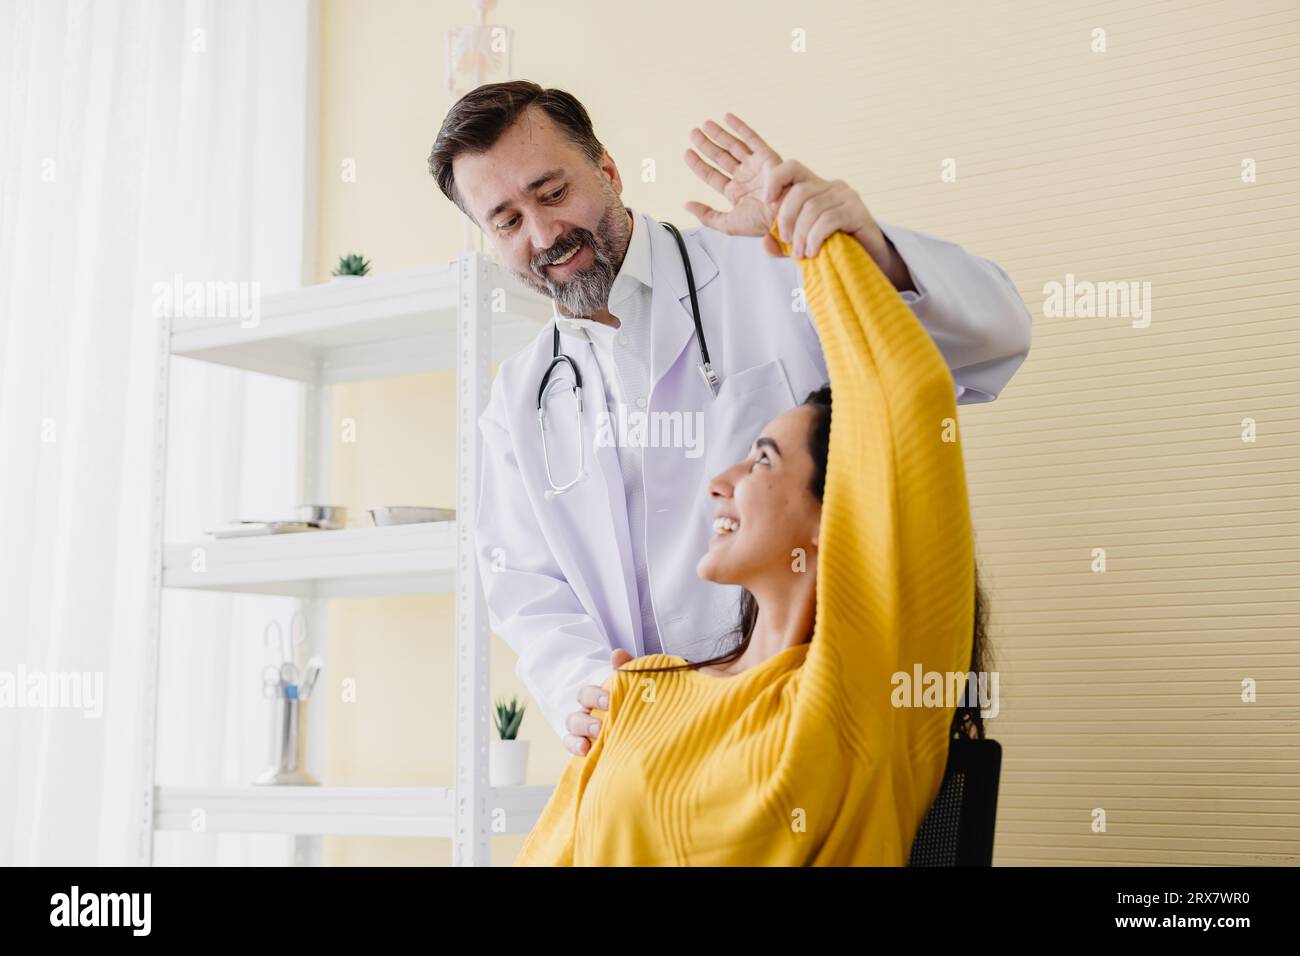 Paziente donna dolore muscolare braccio incontra un medico anziano per la terapia fisica guarigione e recupero schiena lavorare bene e lei molto felice Foto Stock